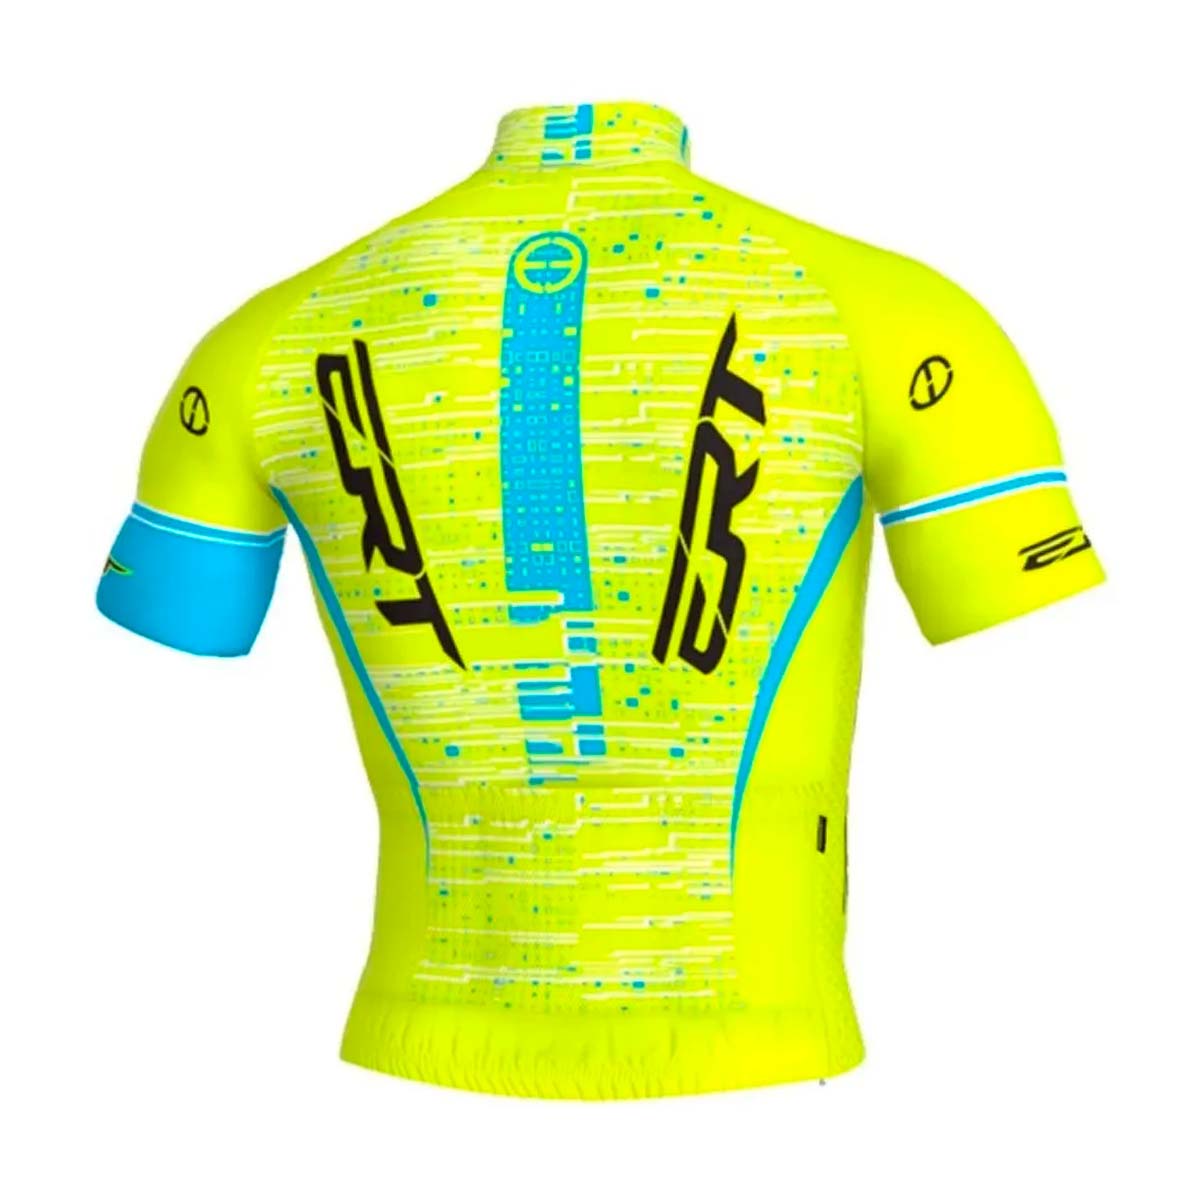 Camisa Ert New Elite Cycling Team Azul e Amarela Fluor Ciclismo 22